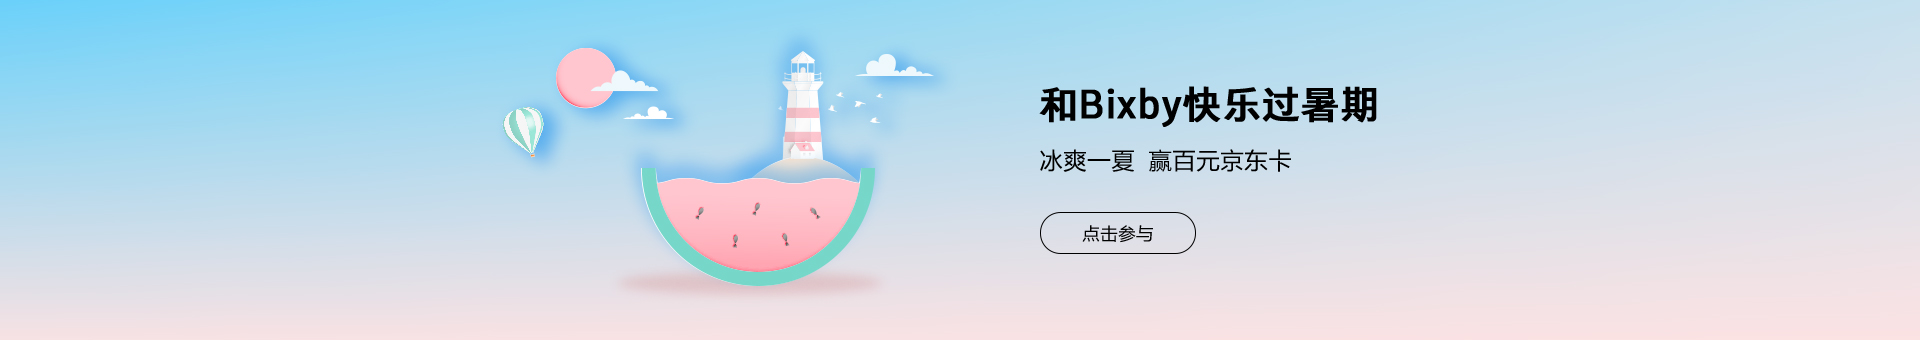 【炎炎夏日，冰爽一夏】参与Bixby活动有机会赢取京东卡奖励